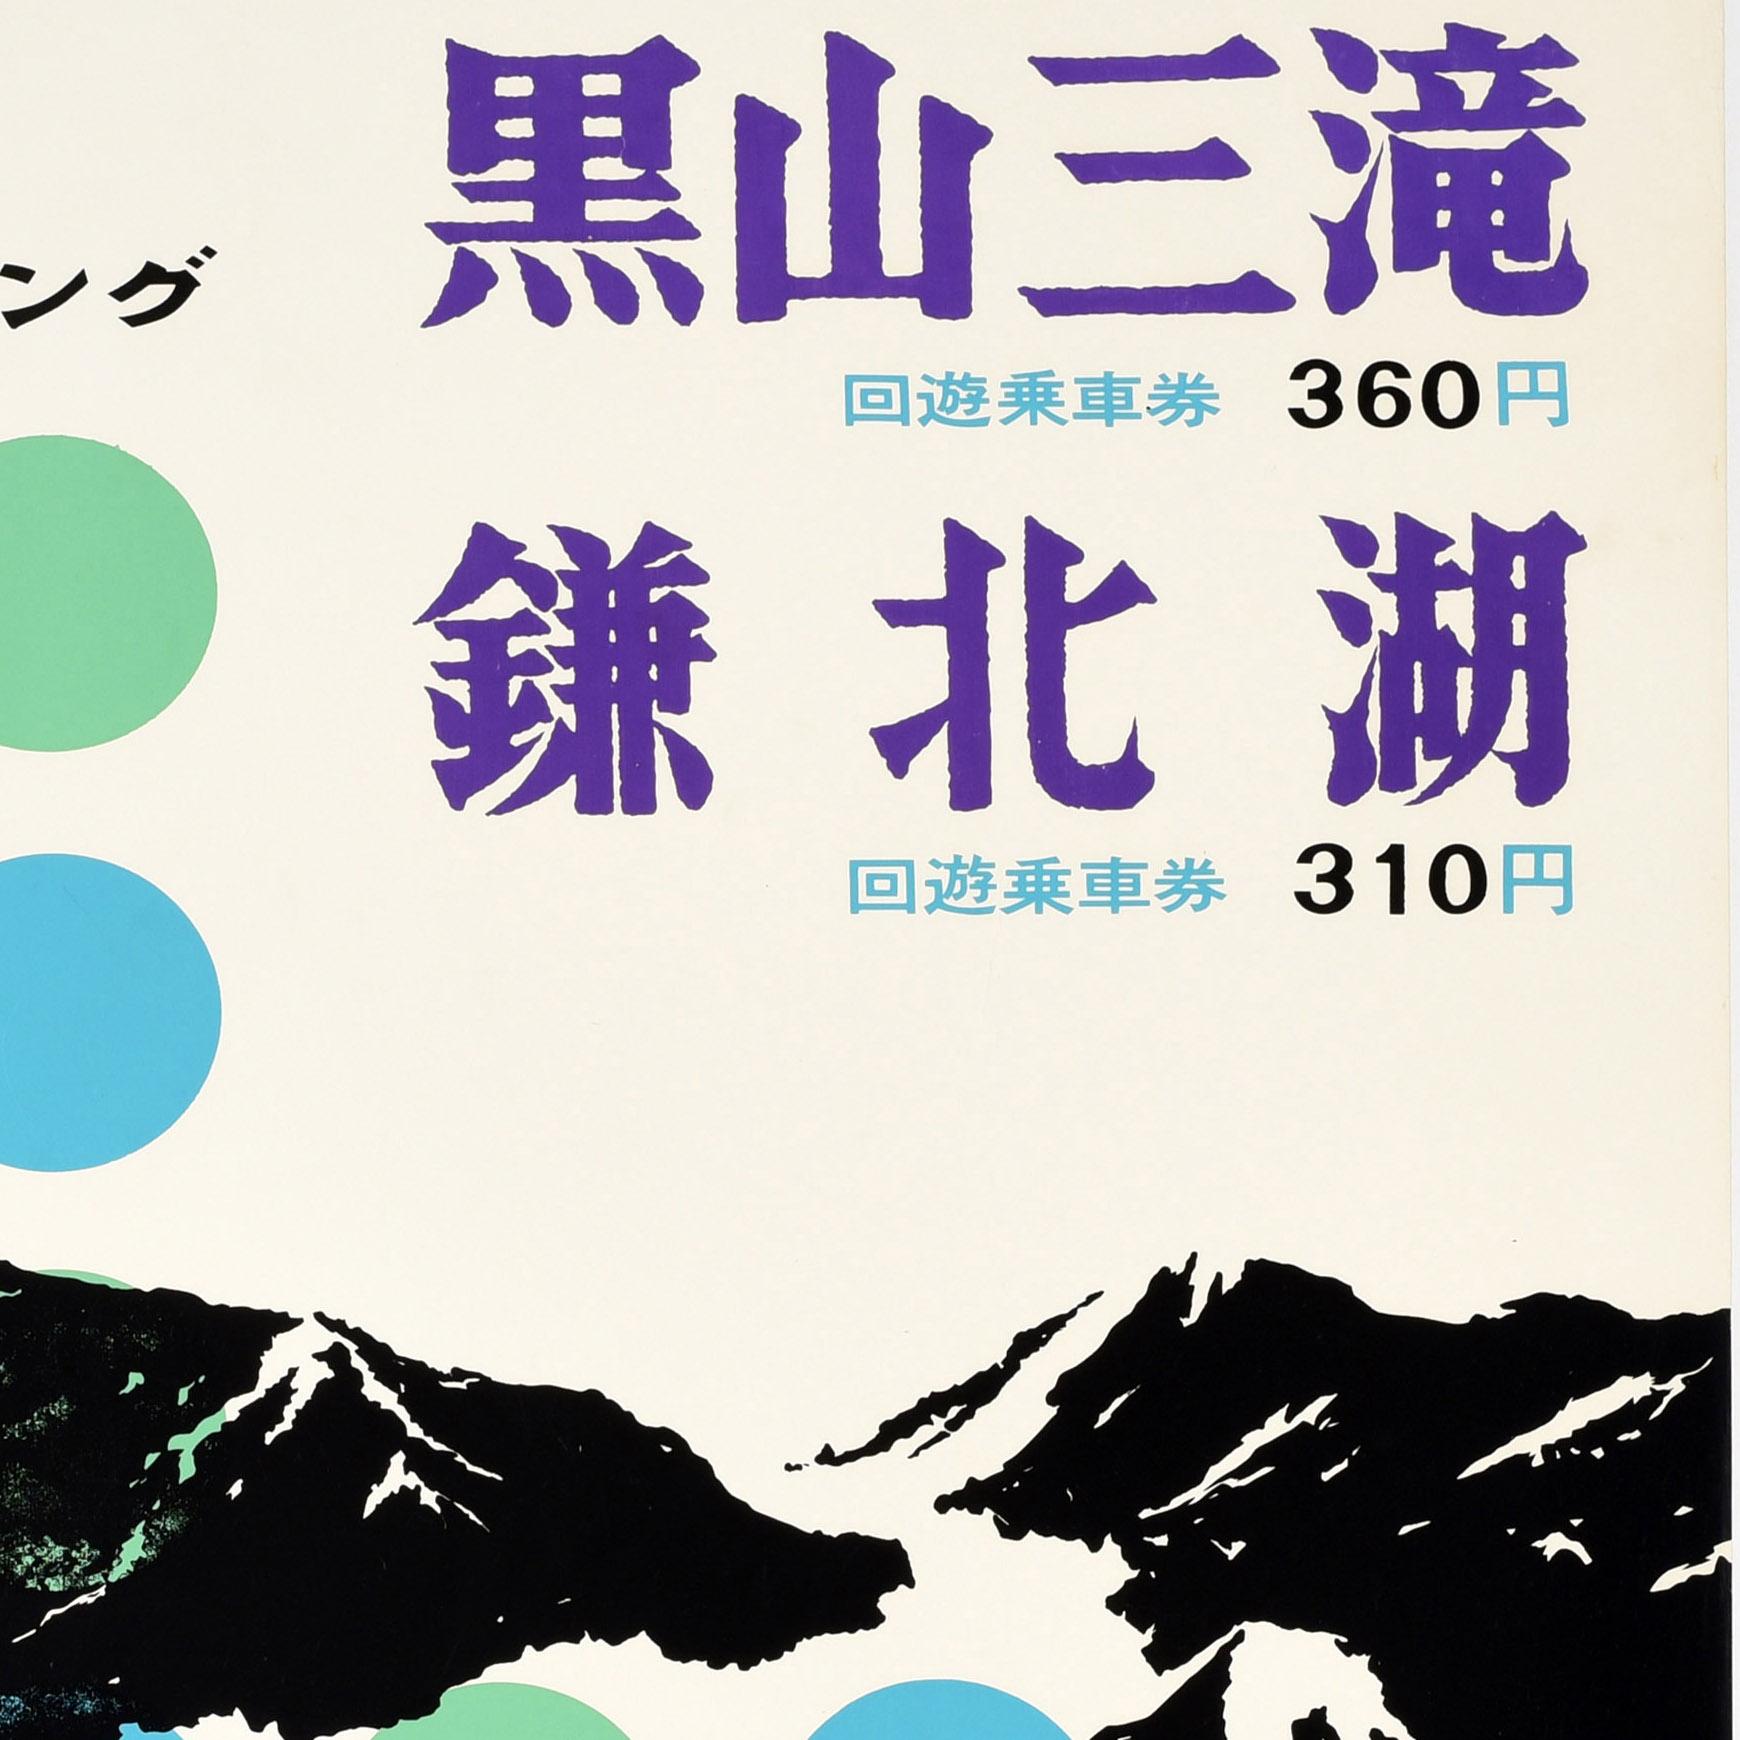 Affiche de voyage originale vintage pour les trois chutes d'eau de Kuroyama - Medaki Falls, Odaki Falls et Tengu Taki - représentant la chaîne de montagnes avec des gorges, des vallées et des arbres en noir sur fond de points verts et bleus avec le